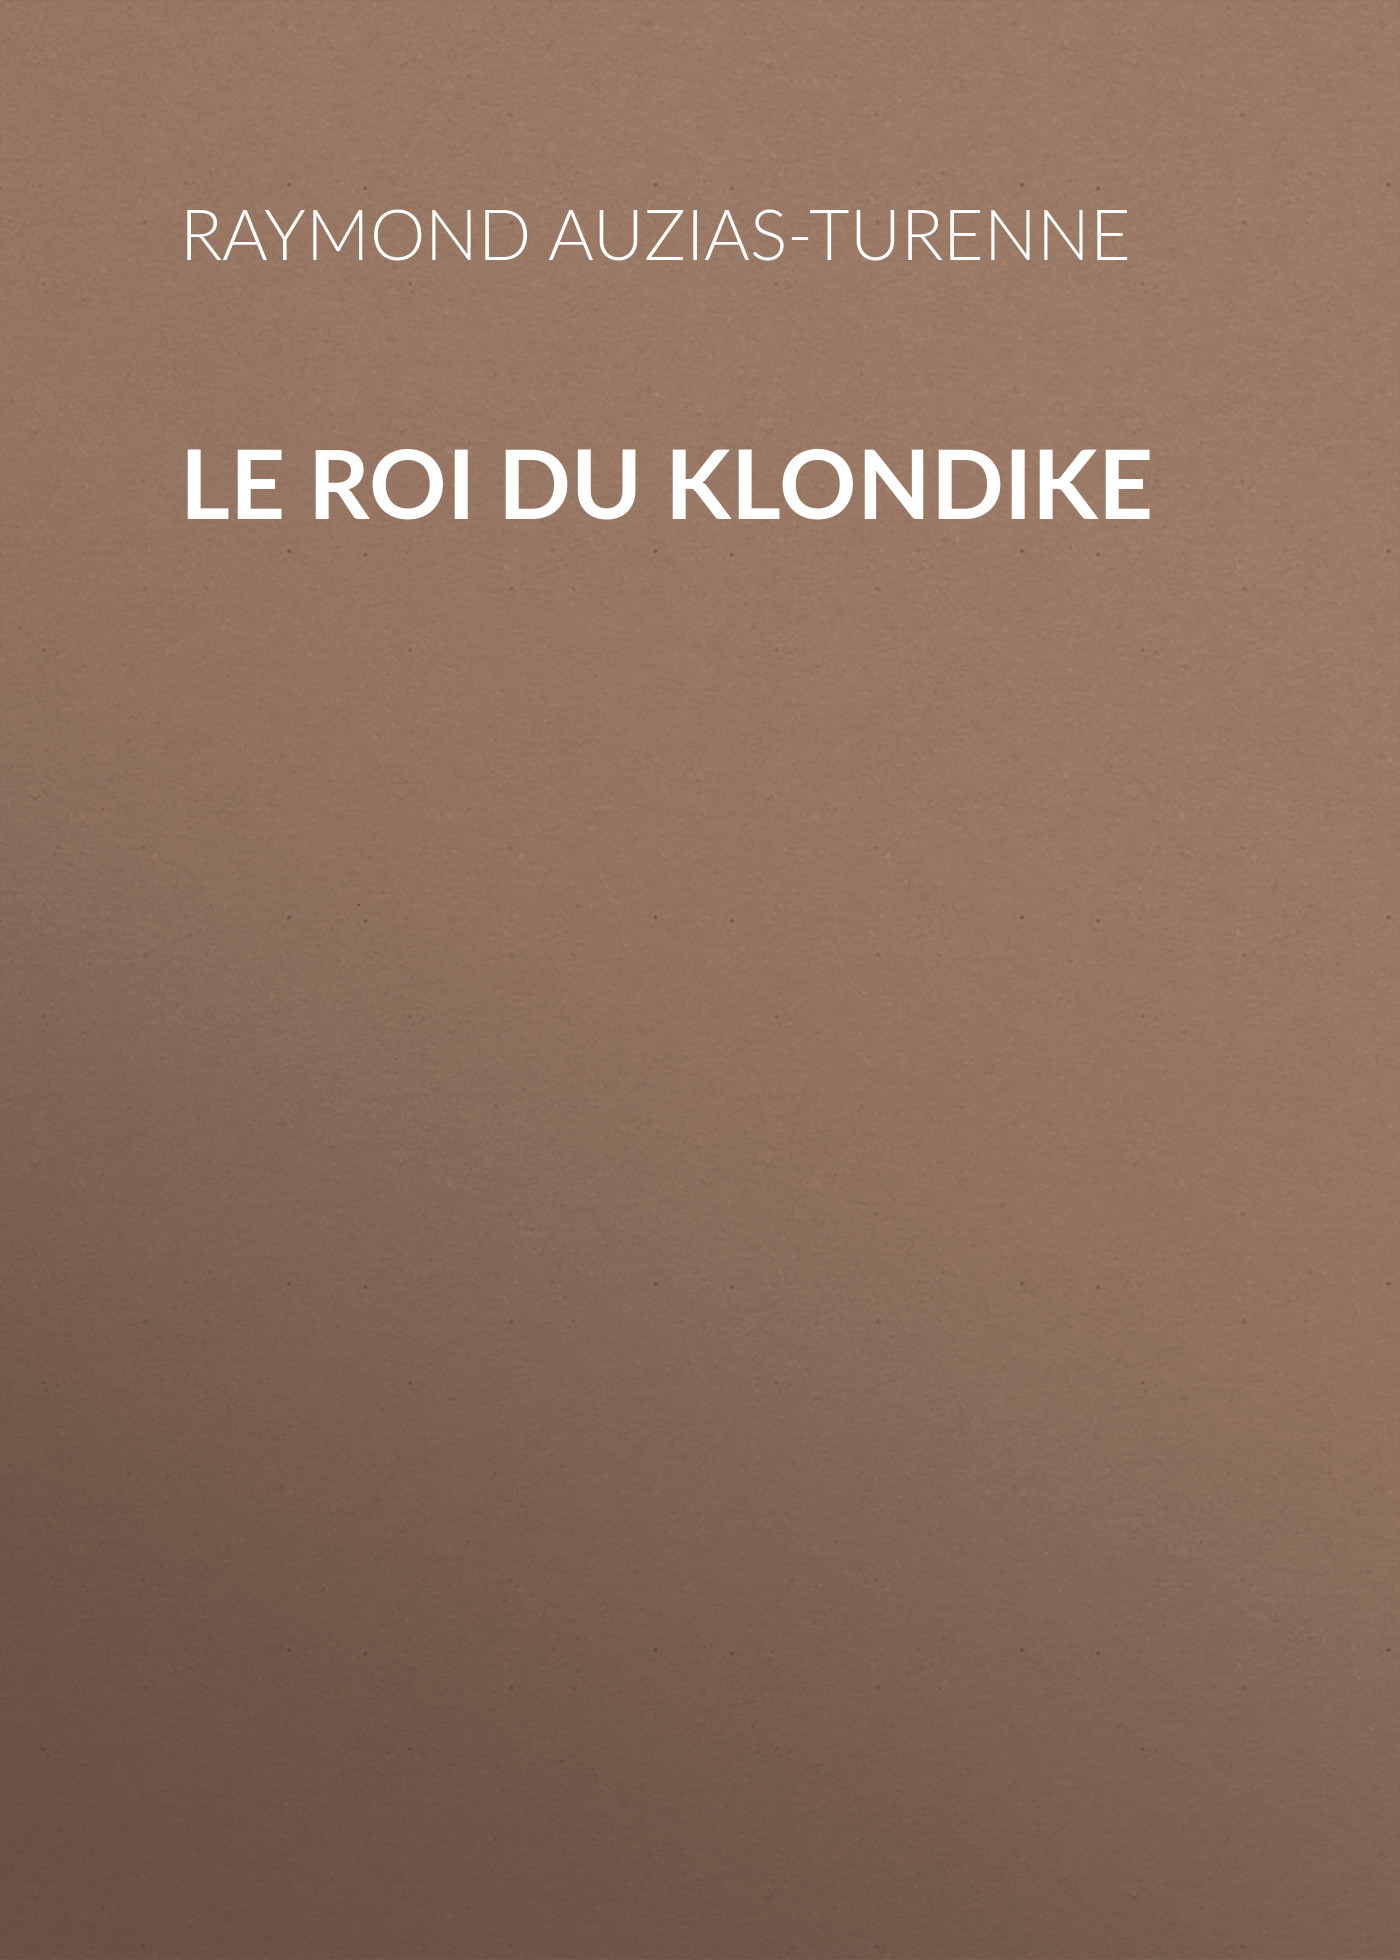 Книга Le roi du Klondike из серии , созданная Raymond Auzias-Turenne, может относится к жанру Зарубежная старинная литература, Зарубежная классика. Стоимость электронной книги Le roi du Klondike с идентификатором 24176636 составляет 0.90 руб.